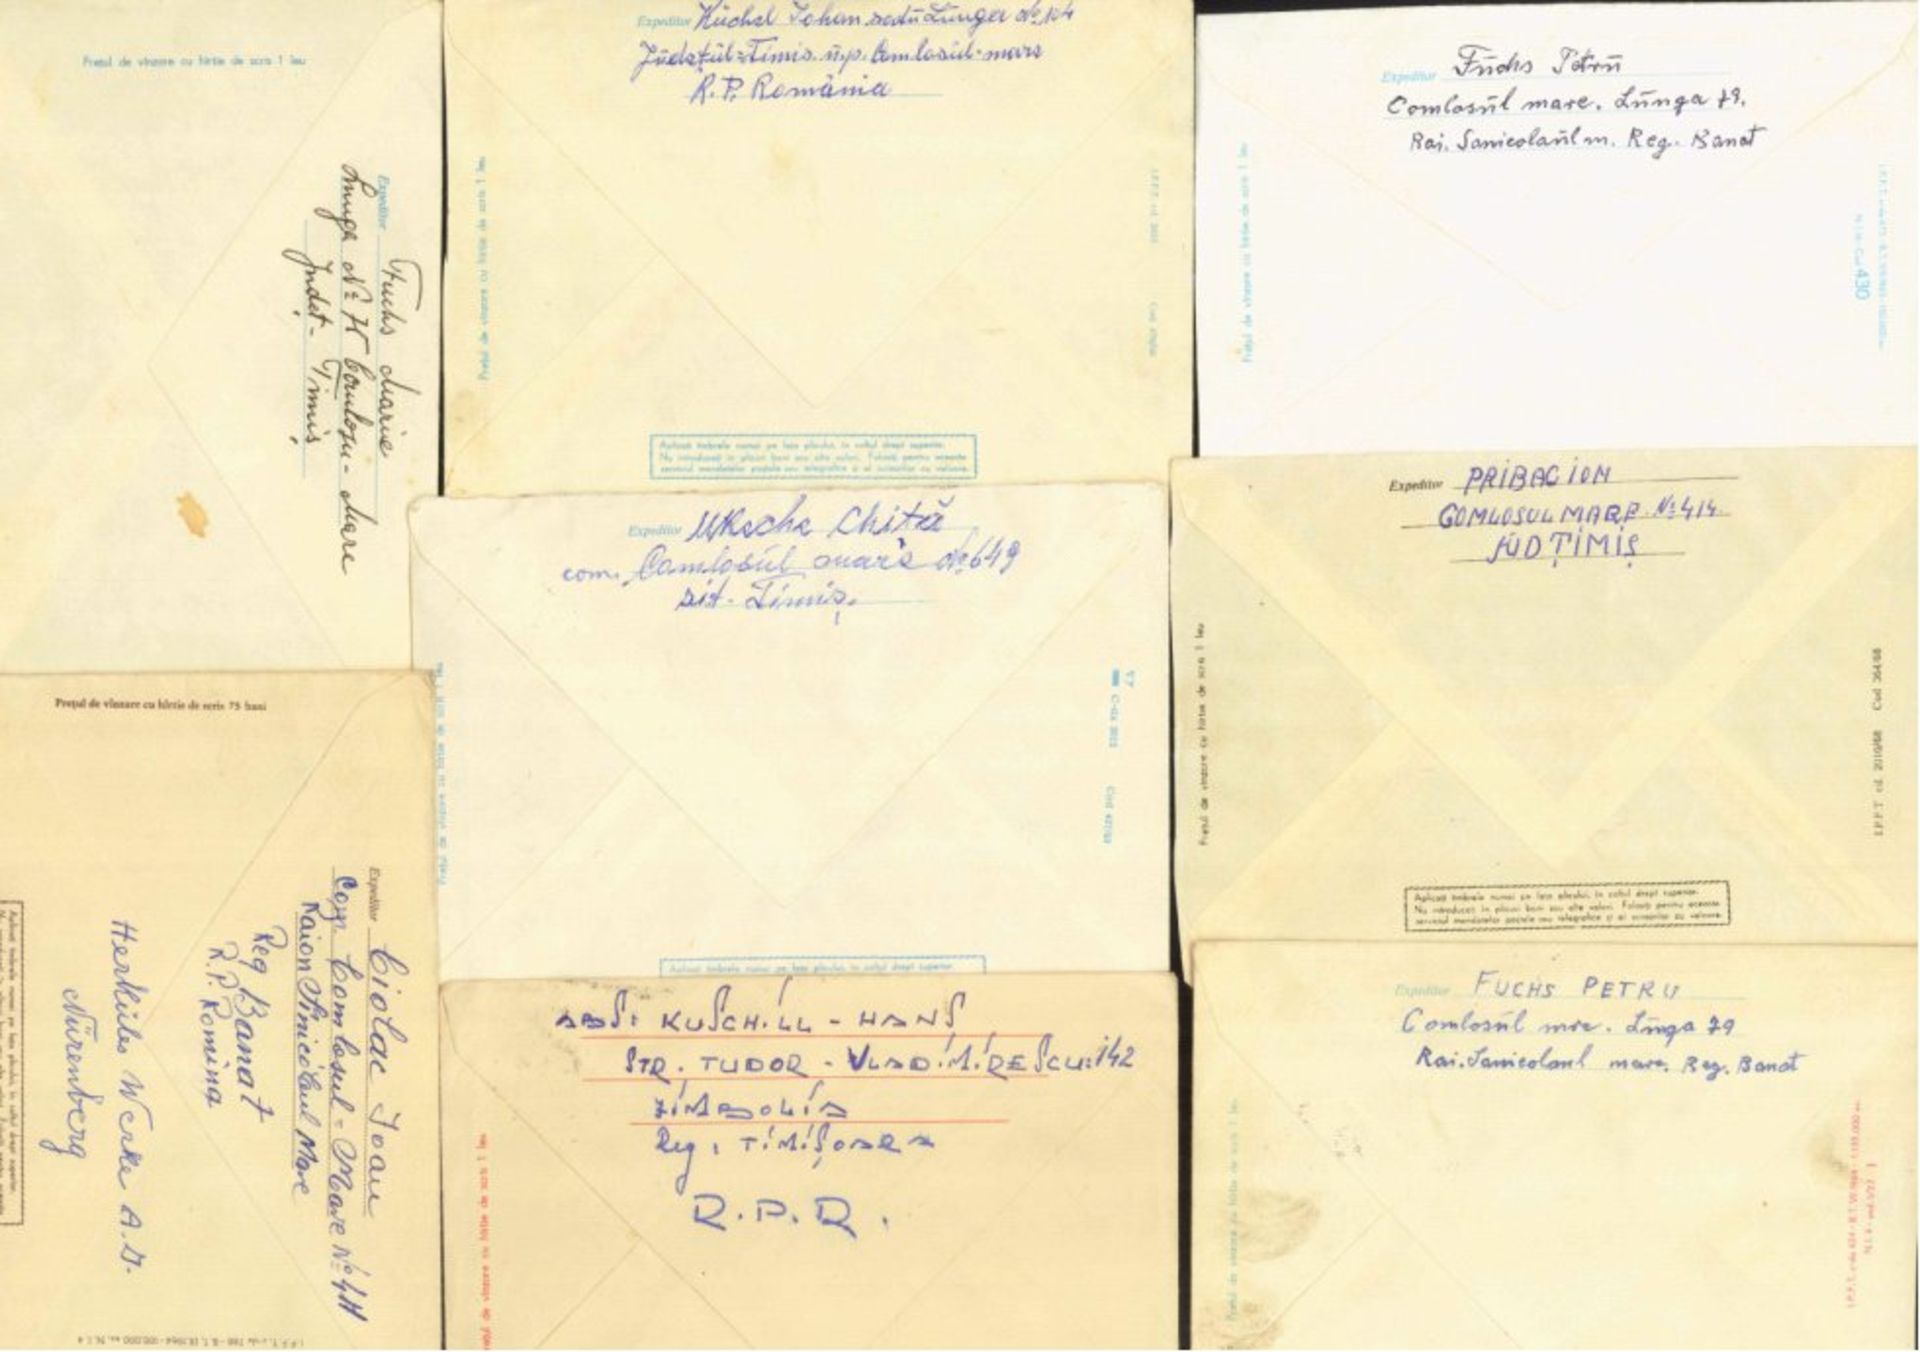 Rumänien, BANAT, TIMISOARA, COMLOSU MAREKorrespondenz aus 1960-1969 einer im Banat lebenden - Bild 4 aus 4